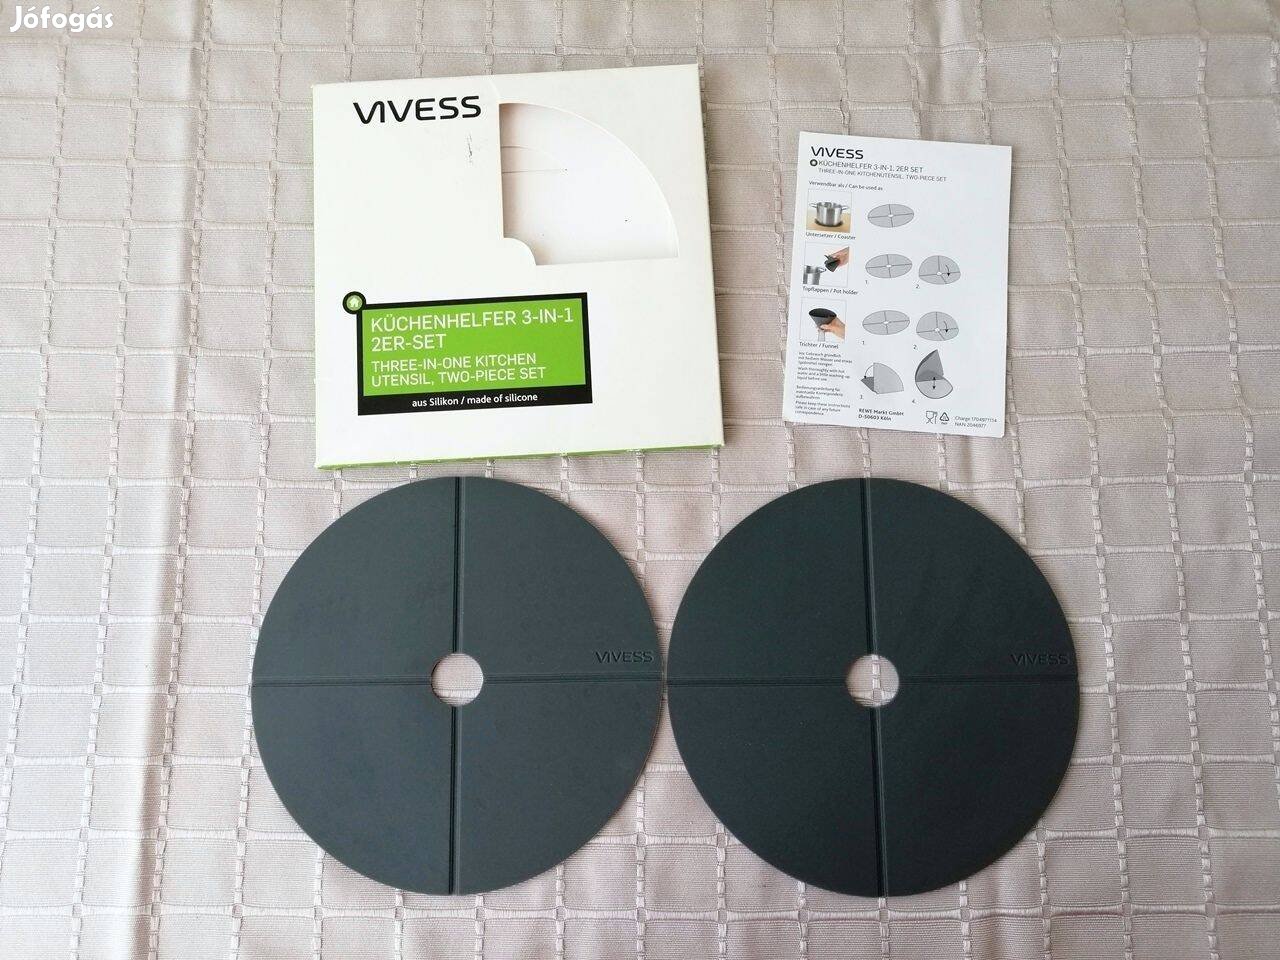 Vivess szilikon konyhai eszköz 3 az 1-ben 2 db-os készlet